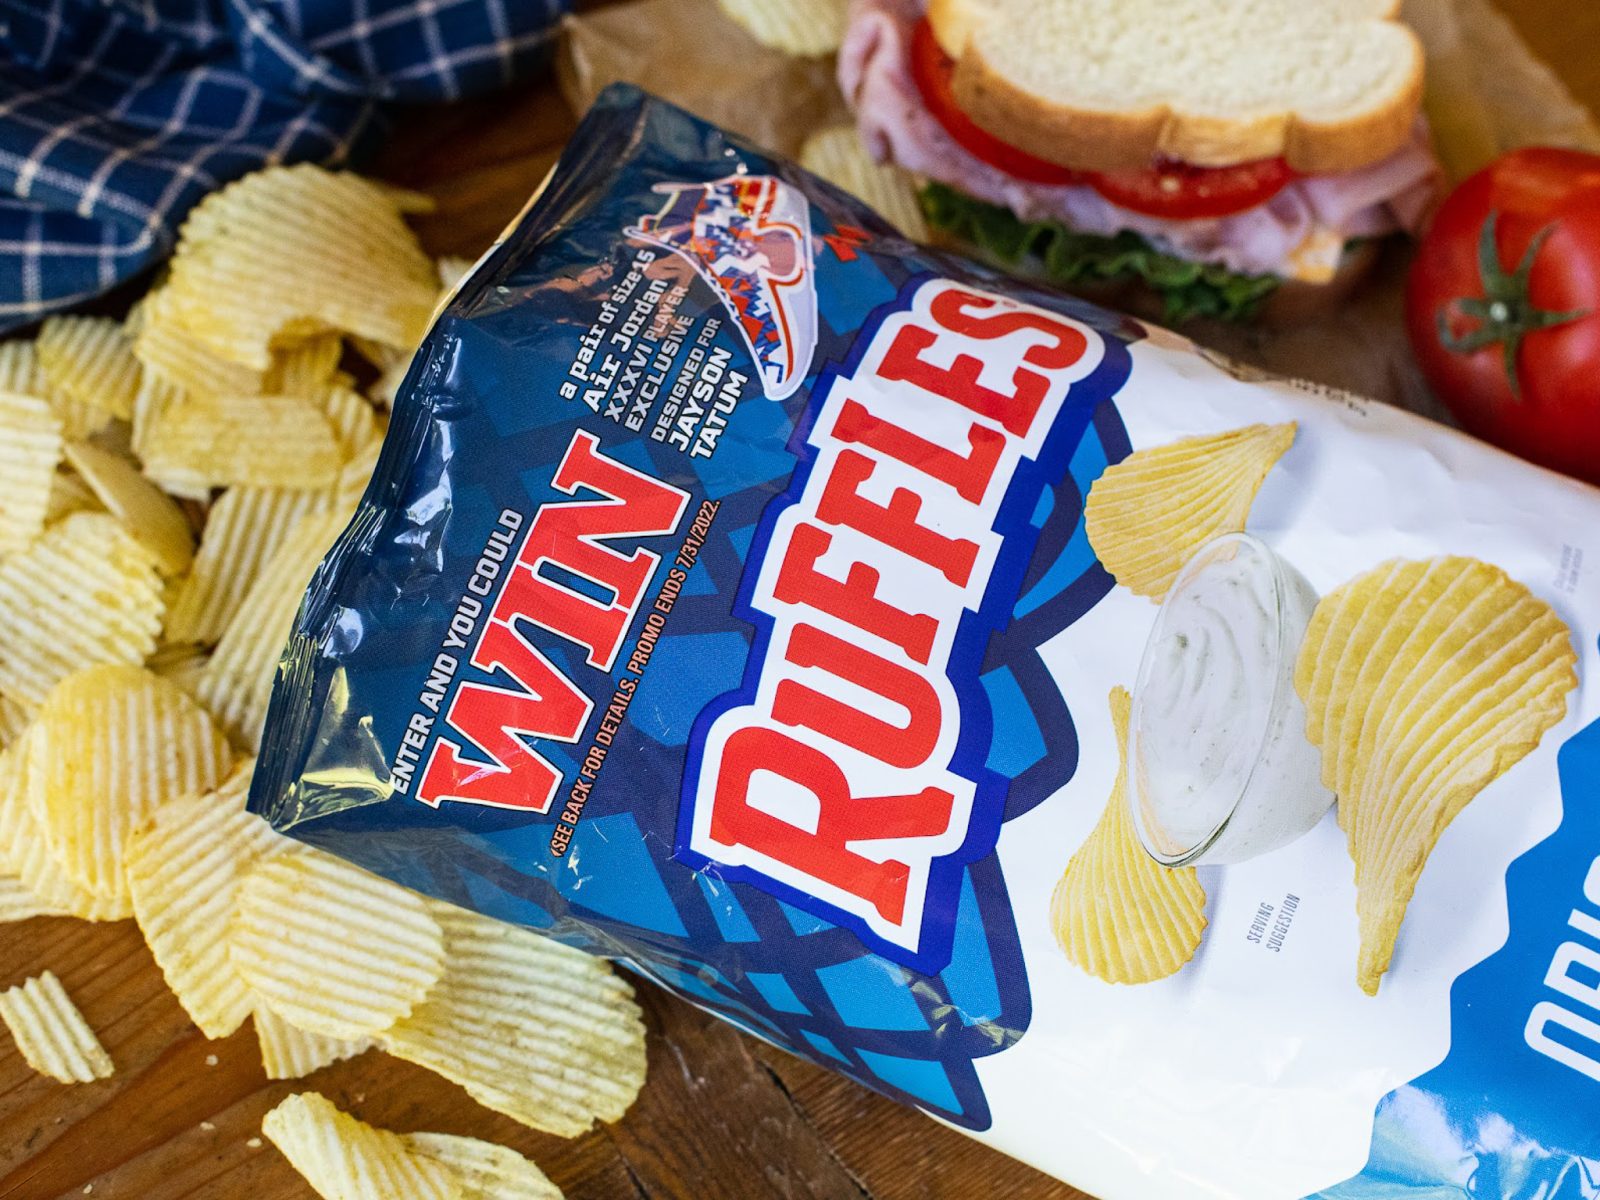 Ruffles Potato Chips As Low As $2.25 At Kroger (Regular Price $5.99)